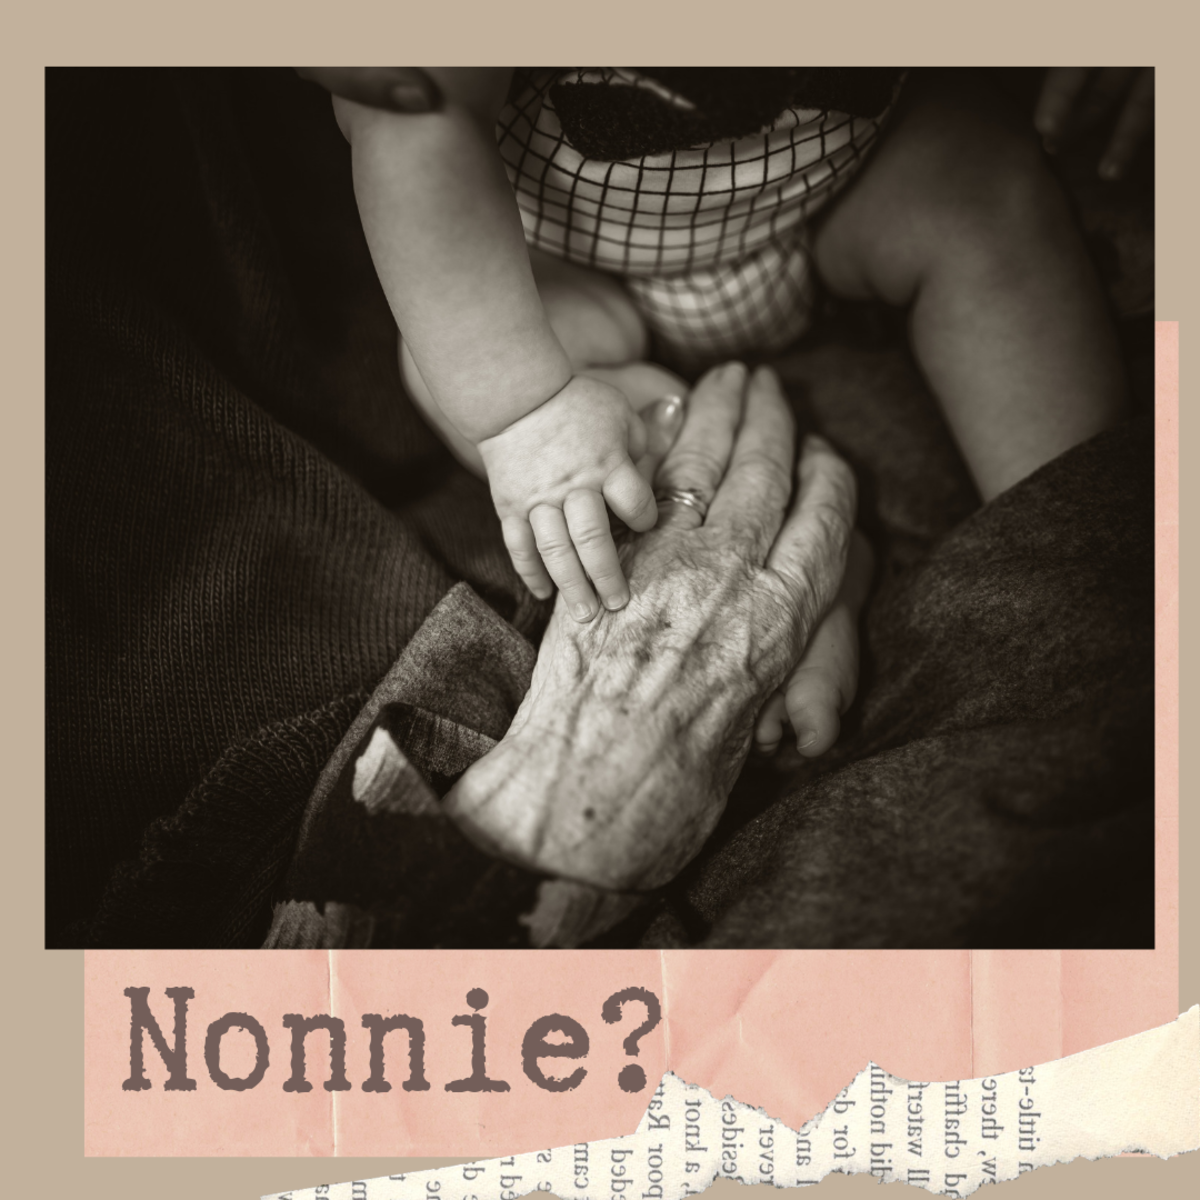 Are you a Nonnie?